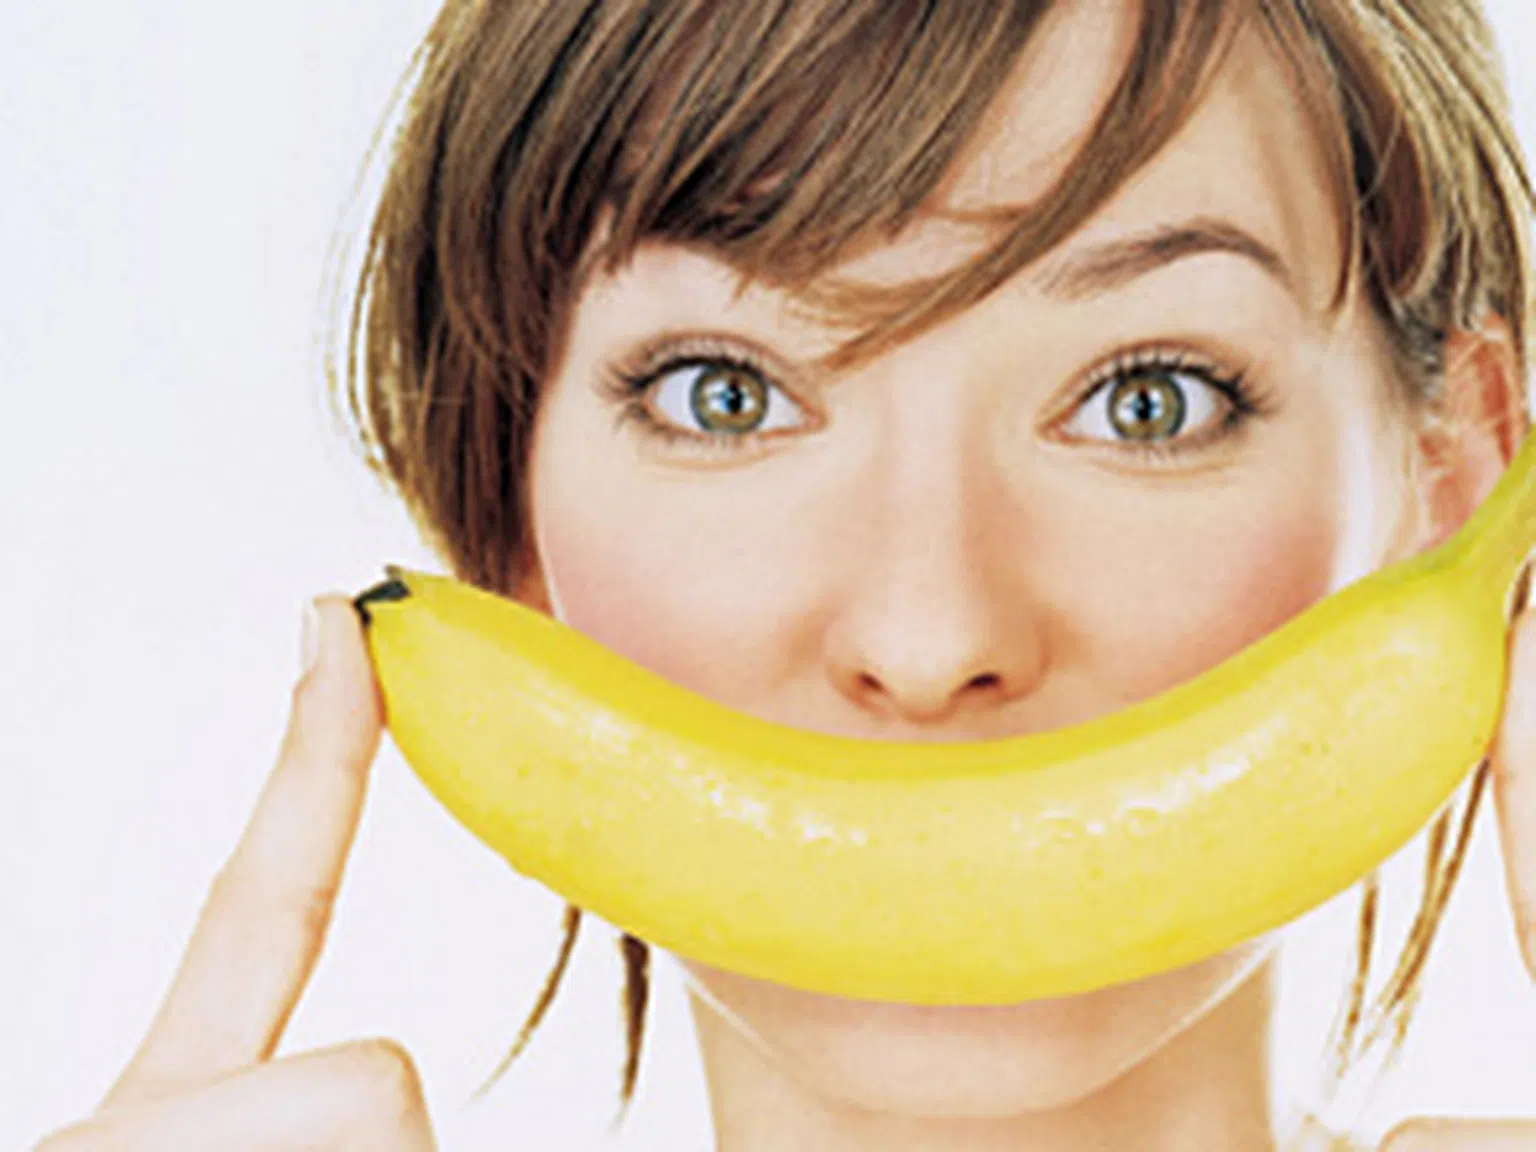 Бананите, орехите и шоколада лекуват депресията